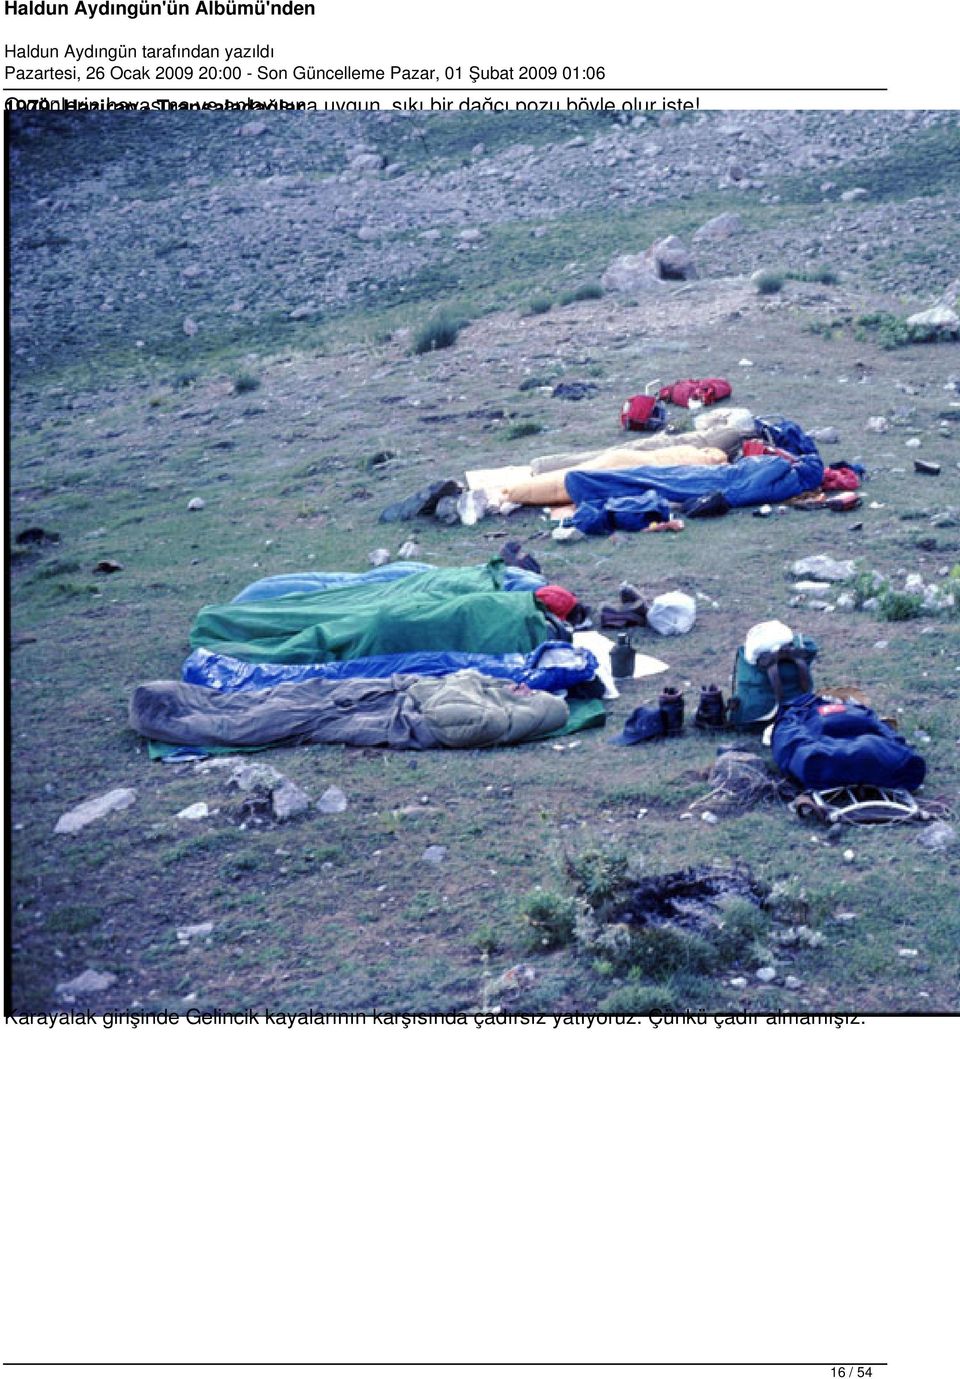 1979 Haziran - Transaladağlar Karayalak girişinde